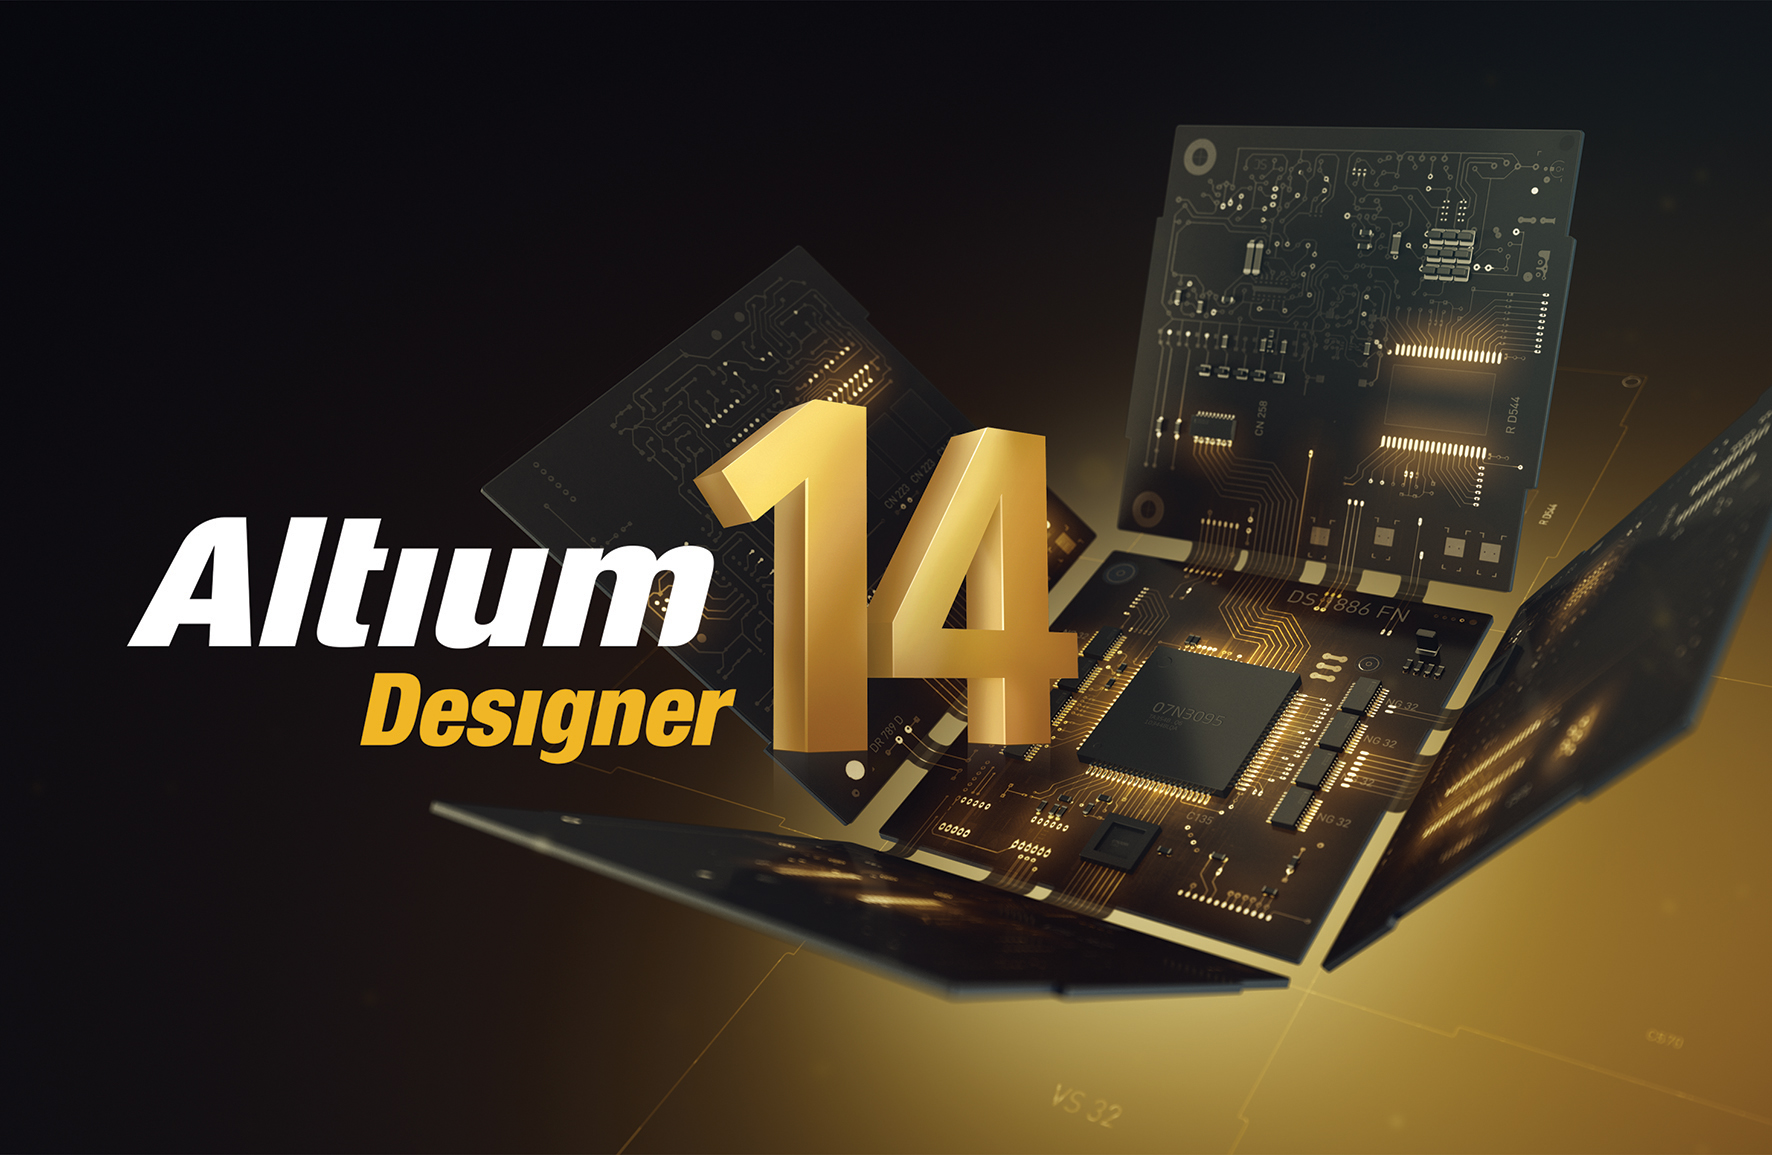 Altium designer 20 download full